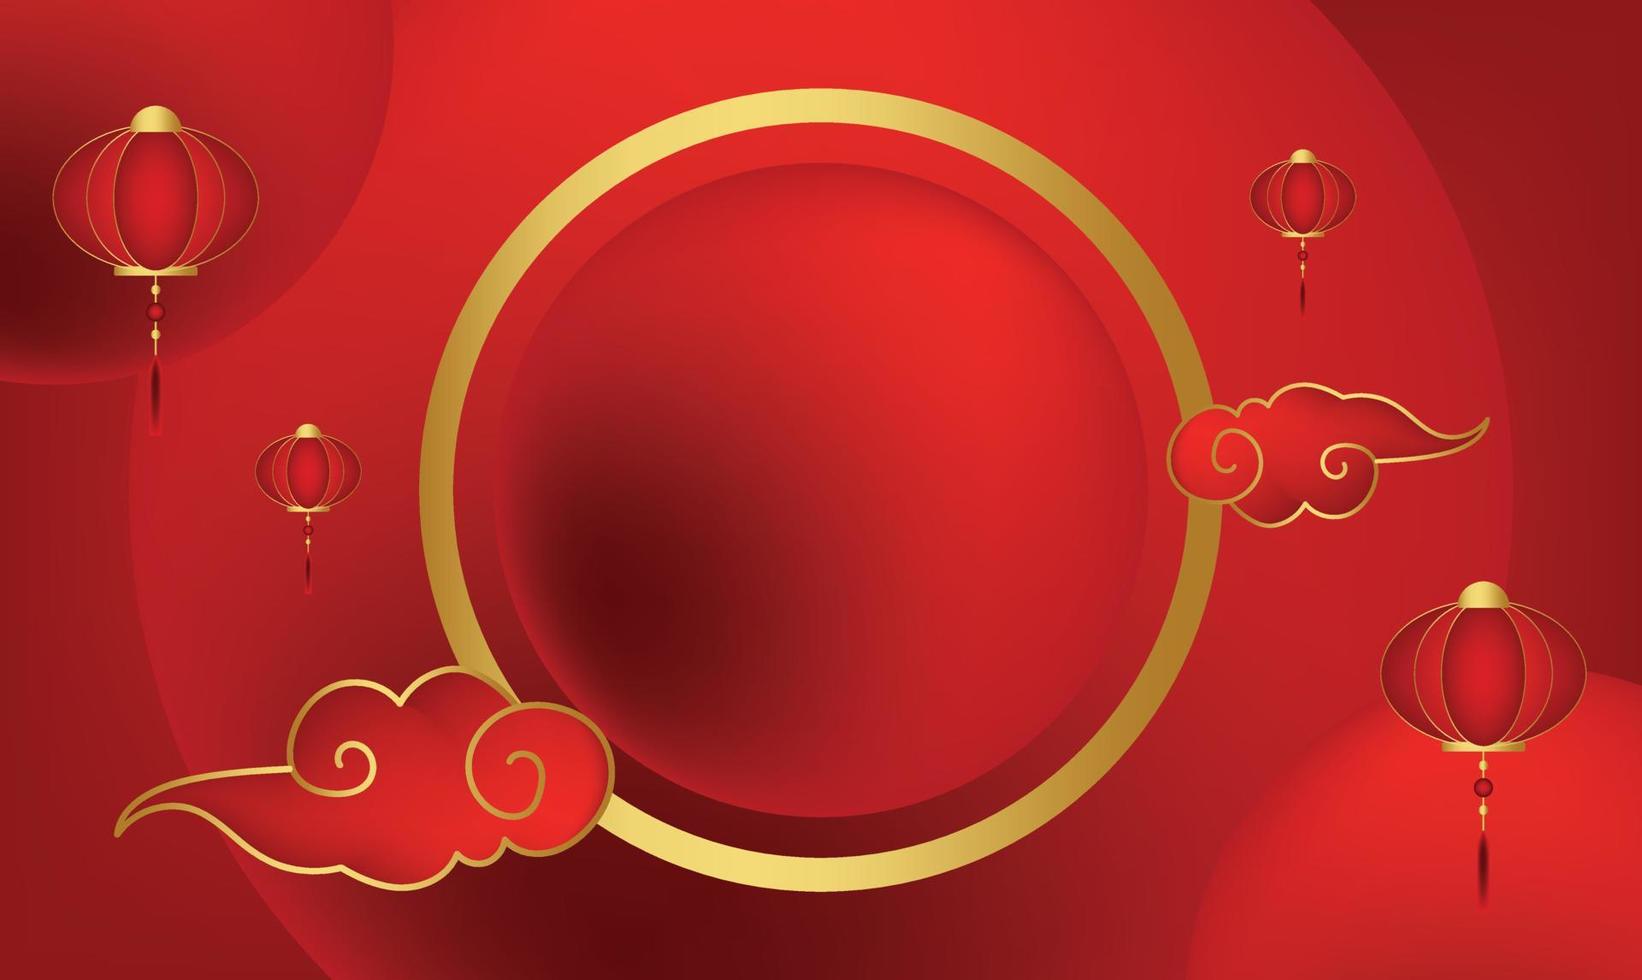 chinesisches neujahr muster abbildung hintergrund tapete banner vorlage flyer poster event label kulisse modern vektor design konzept premium farbe digital karte ornamental schwarz gold luxus